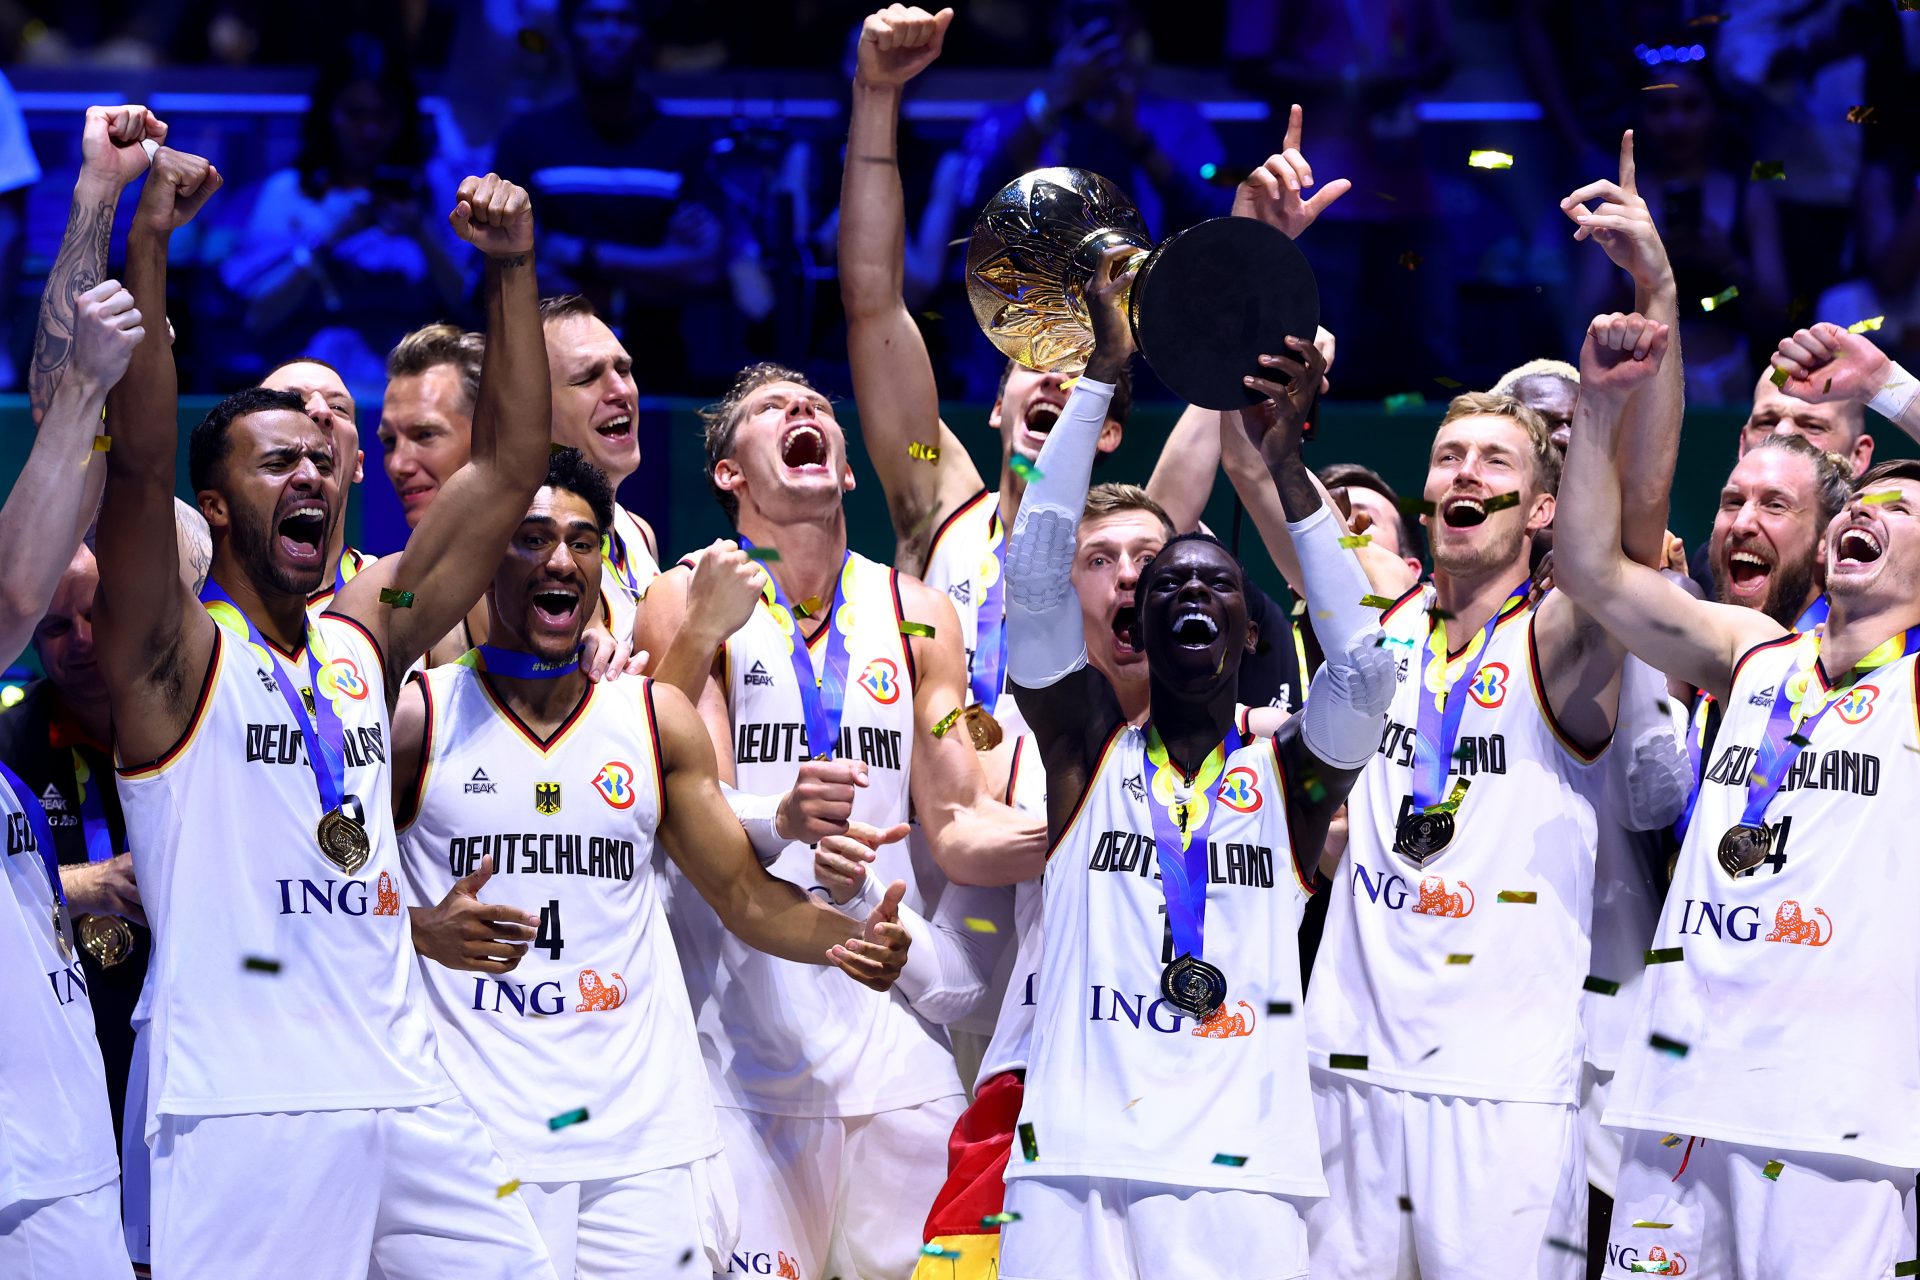 Euphorie der Basketball-Weltmeister: Pressekonferenz nach erstem WM-Titel für Deutschland gecrasht